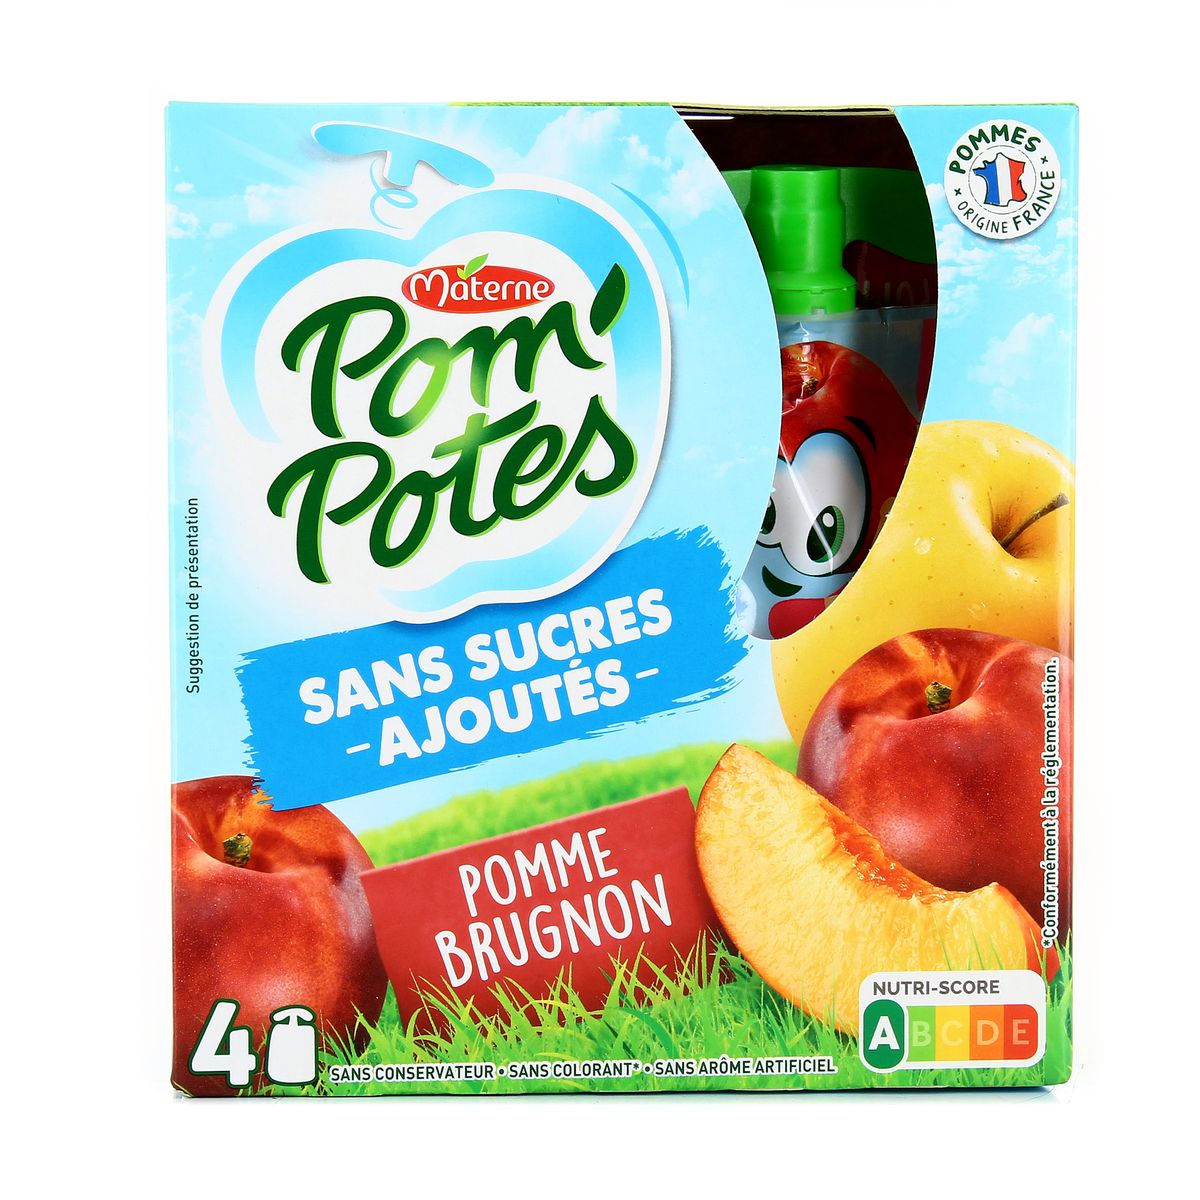 Acheter Materne Pom'potes pomme brugnon sans sucres ajoutés, 4x90g